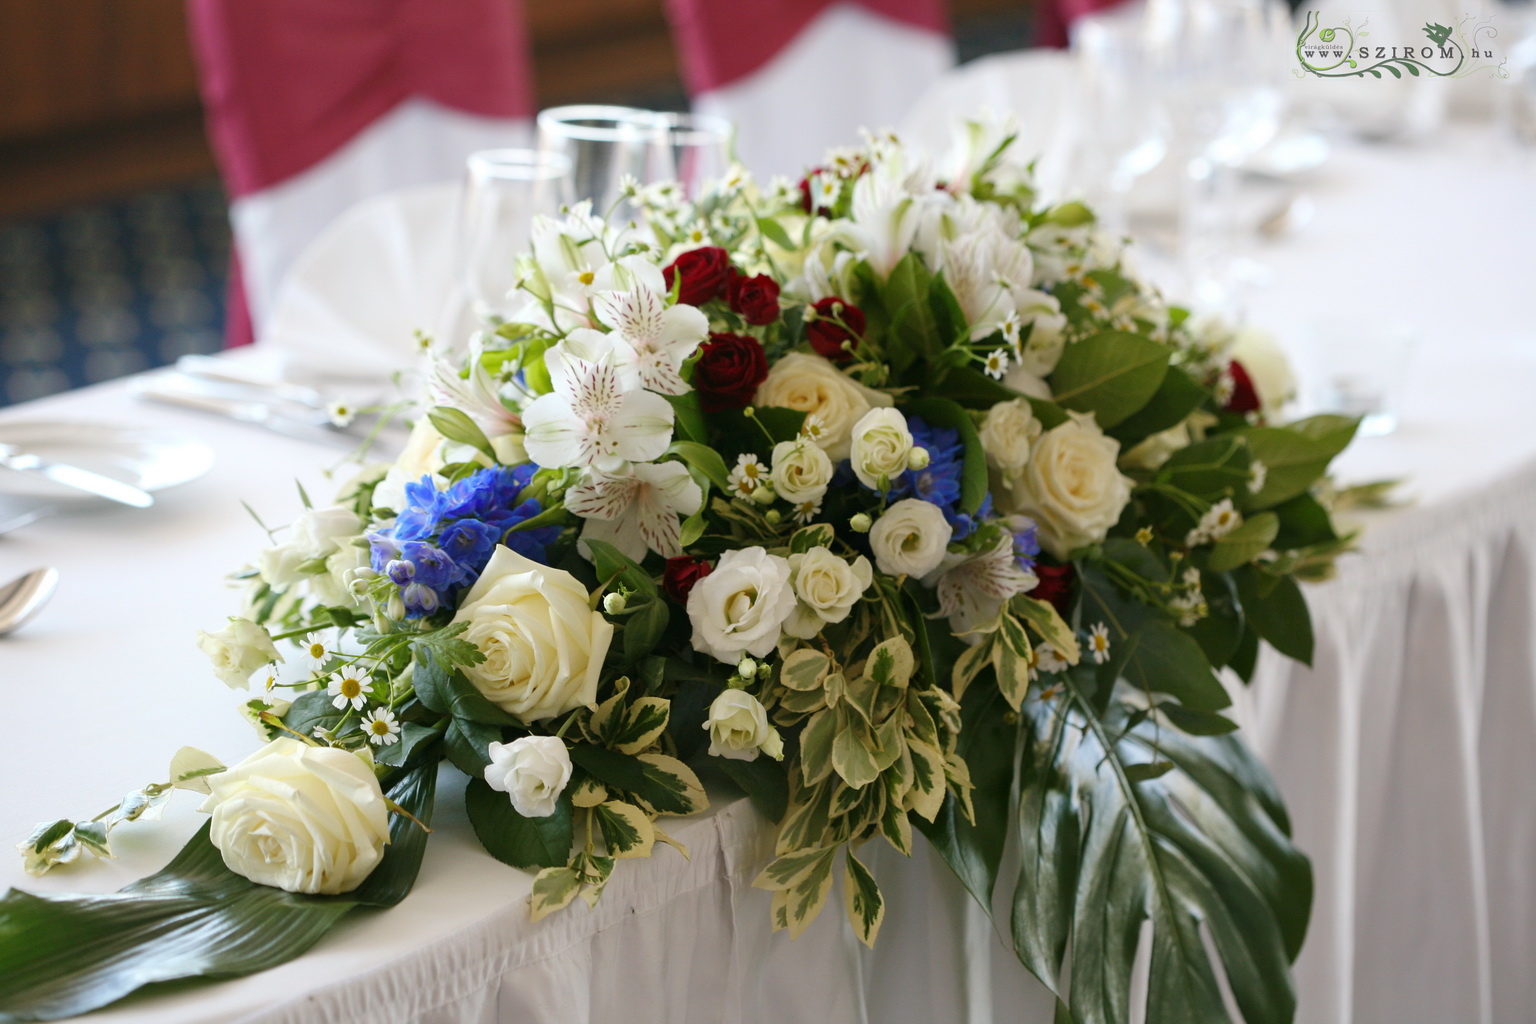 Főasztaldísz (rózsa, bokros rózsa, szarkaláb, inkaliliom, fehér, piros, kék) Marriott Hotel, Budapest, esküvő